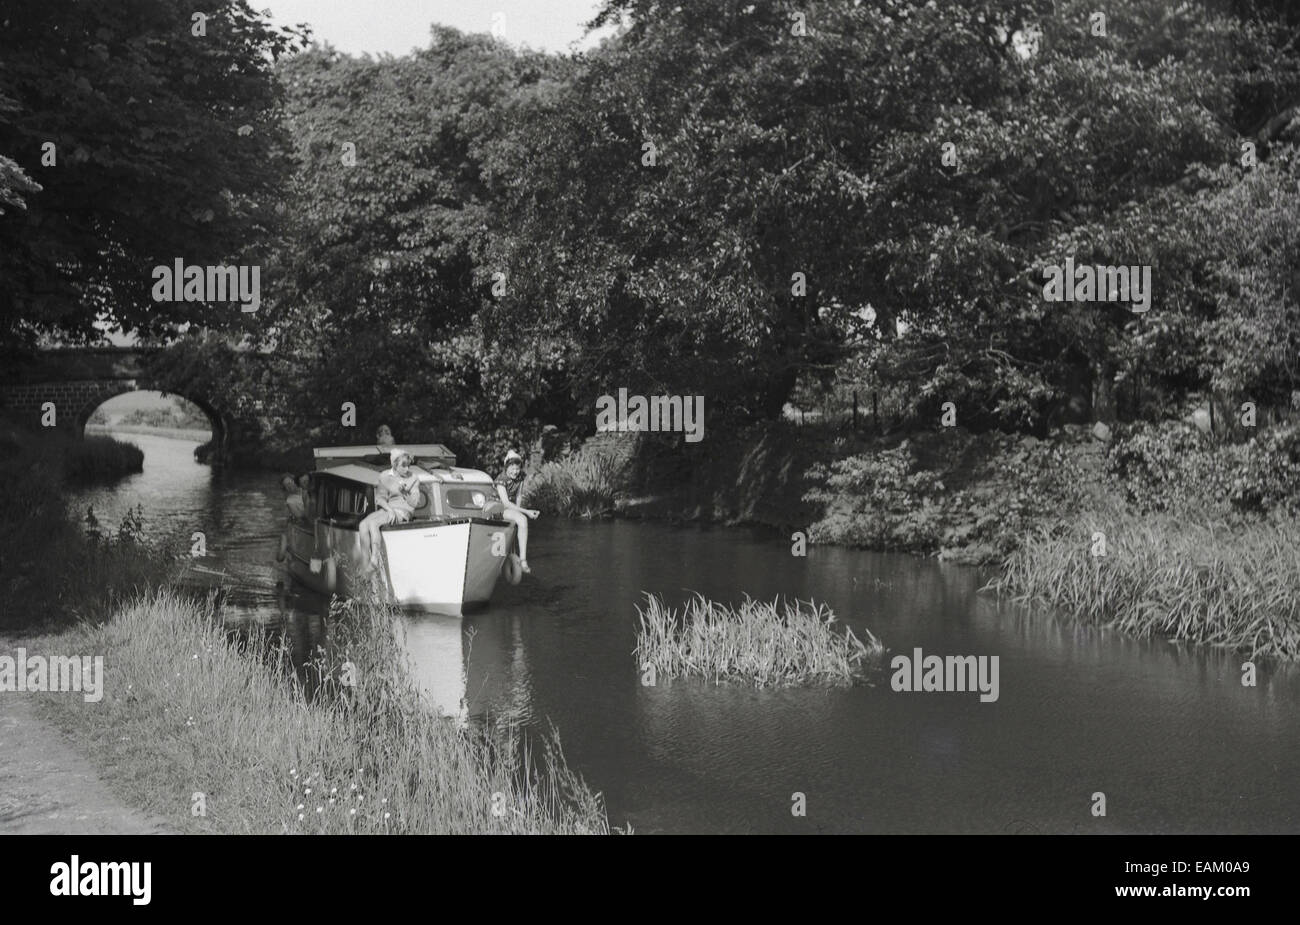 Degli anni Cinquanta, storico, immagine che mostra una barca di piacere sulle rive di un fiume con i ragazzi seduti in barca nella parte anteriore. Foto Stock